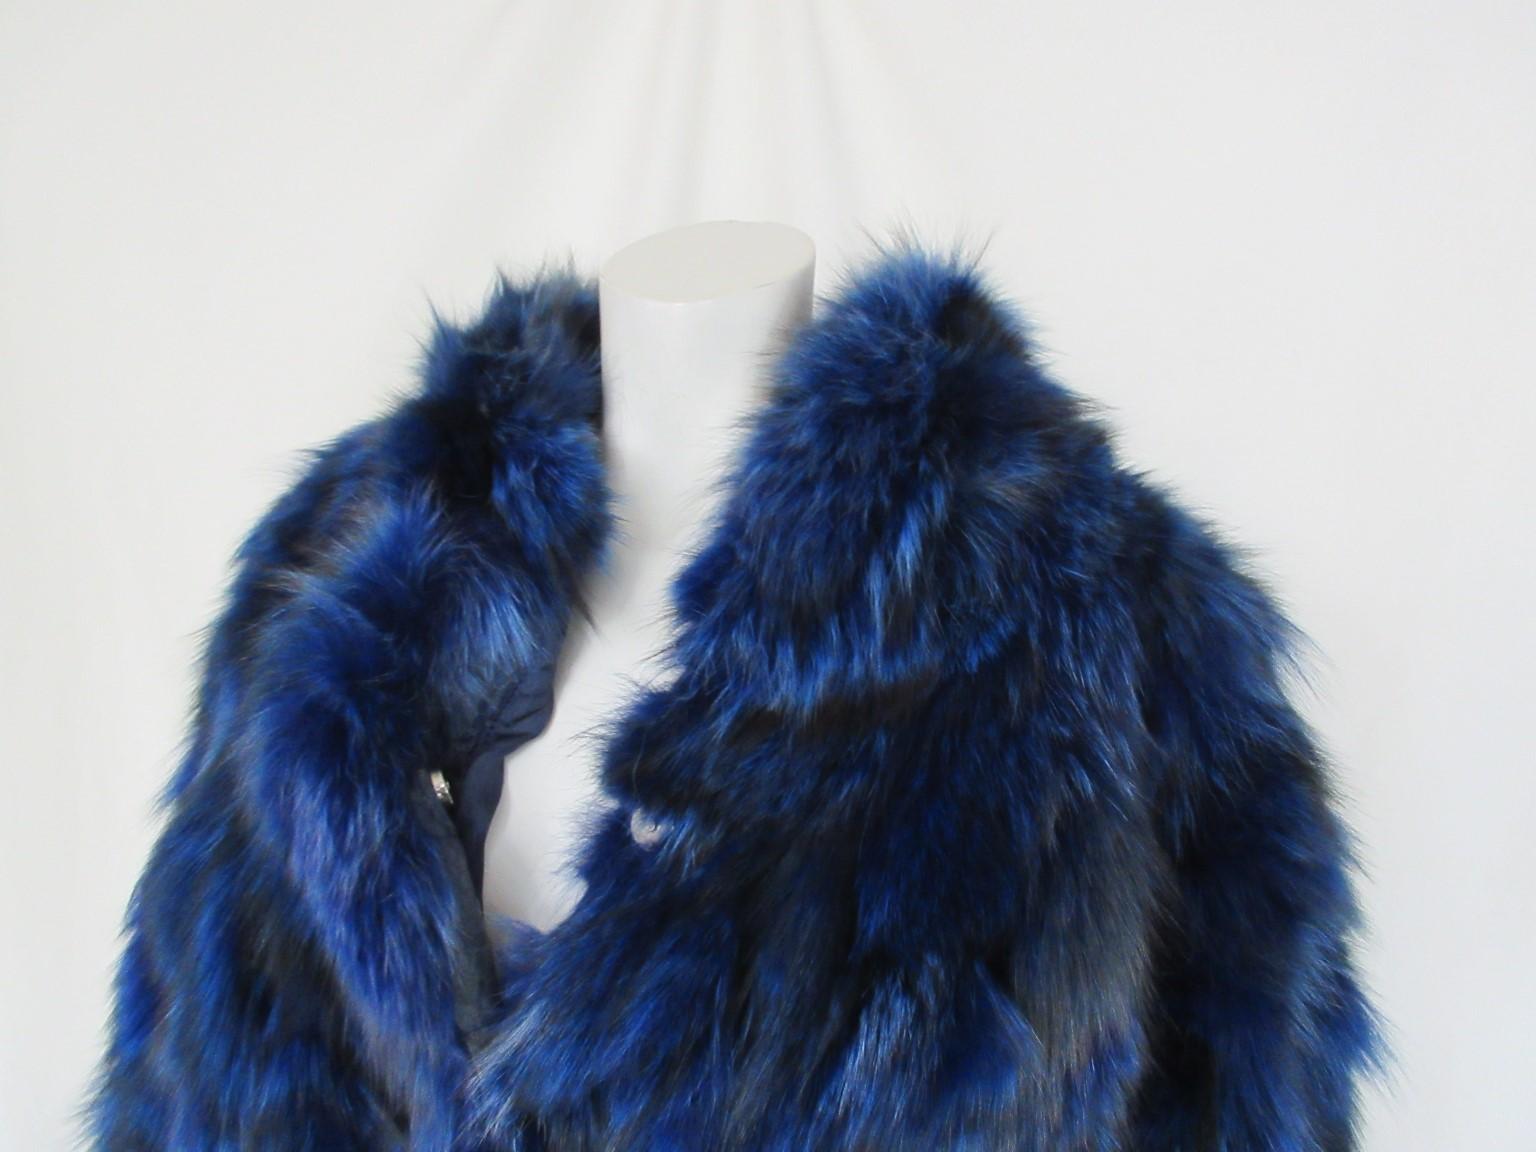 Schöne Vintage blau gefärbt Fuchs Pelz Jacke, 

Wir bieten weitere exklusive Pelzartikel an, siehe unseren Frontstore

Einzelheiten:
blau gefärbter Fuchspelz
2 Taschen und 3 Druckknöpfe.
Weite Ärmel
Can von Männern oder Frauen und kleineren Personen